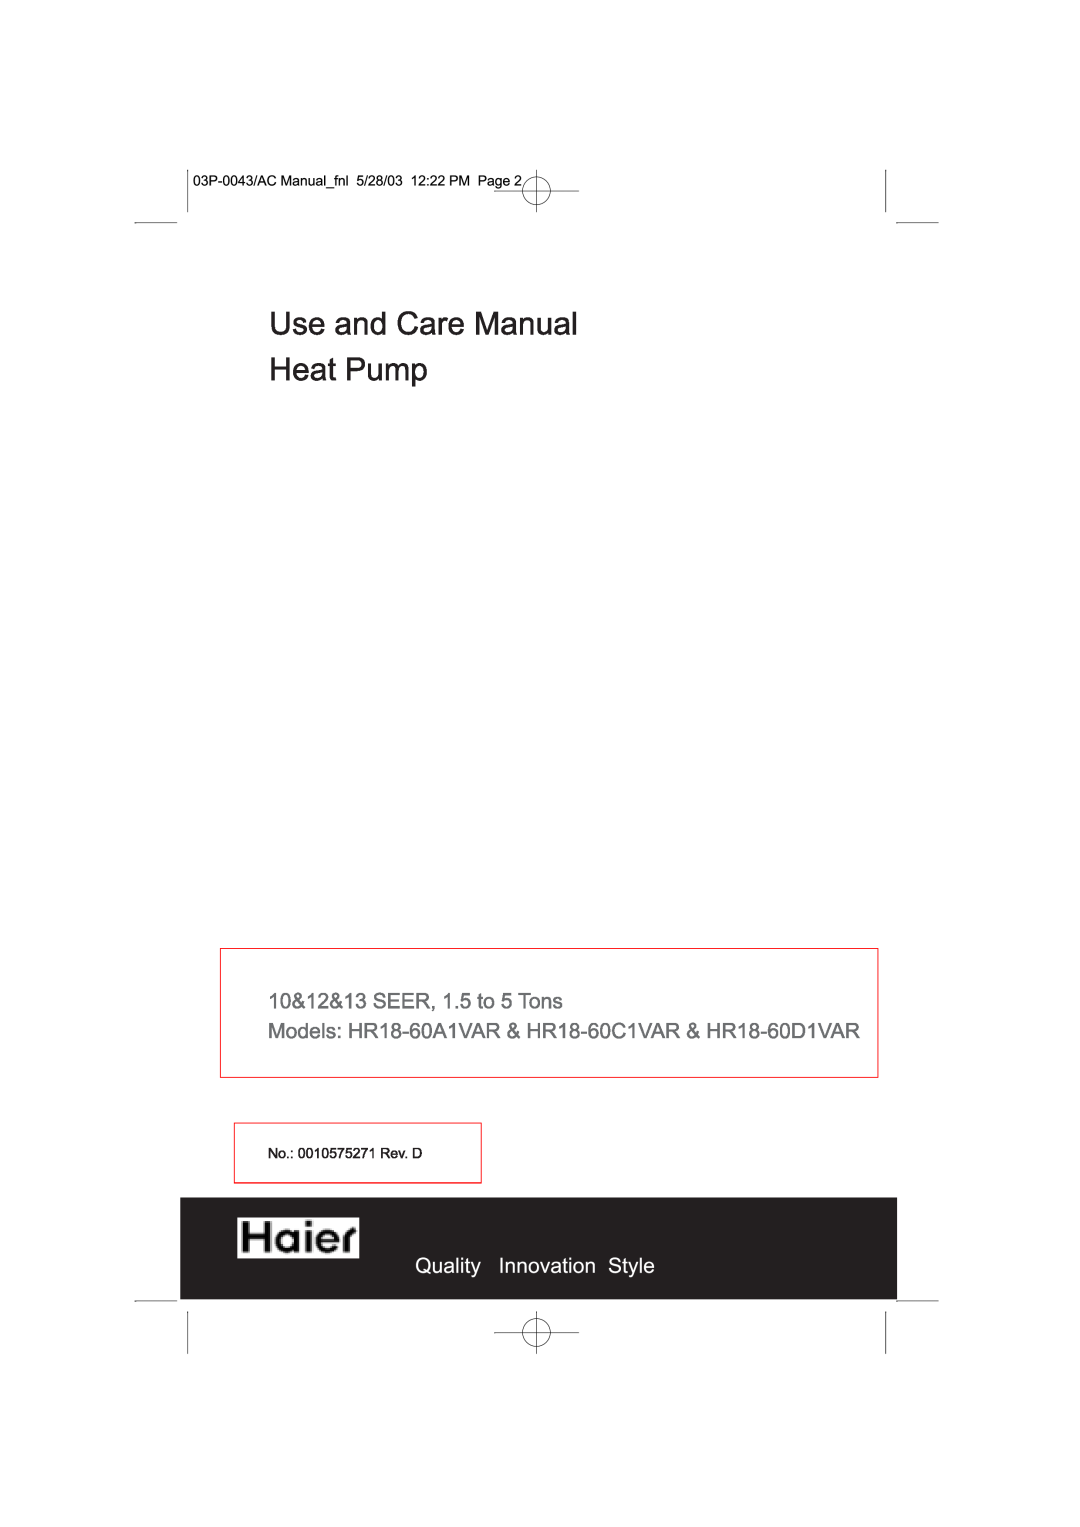 Haier HR18-60D1VAR manual 